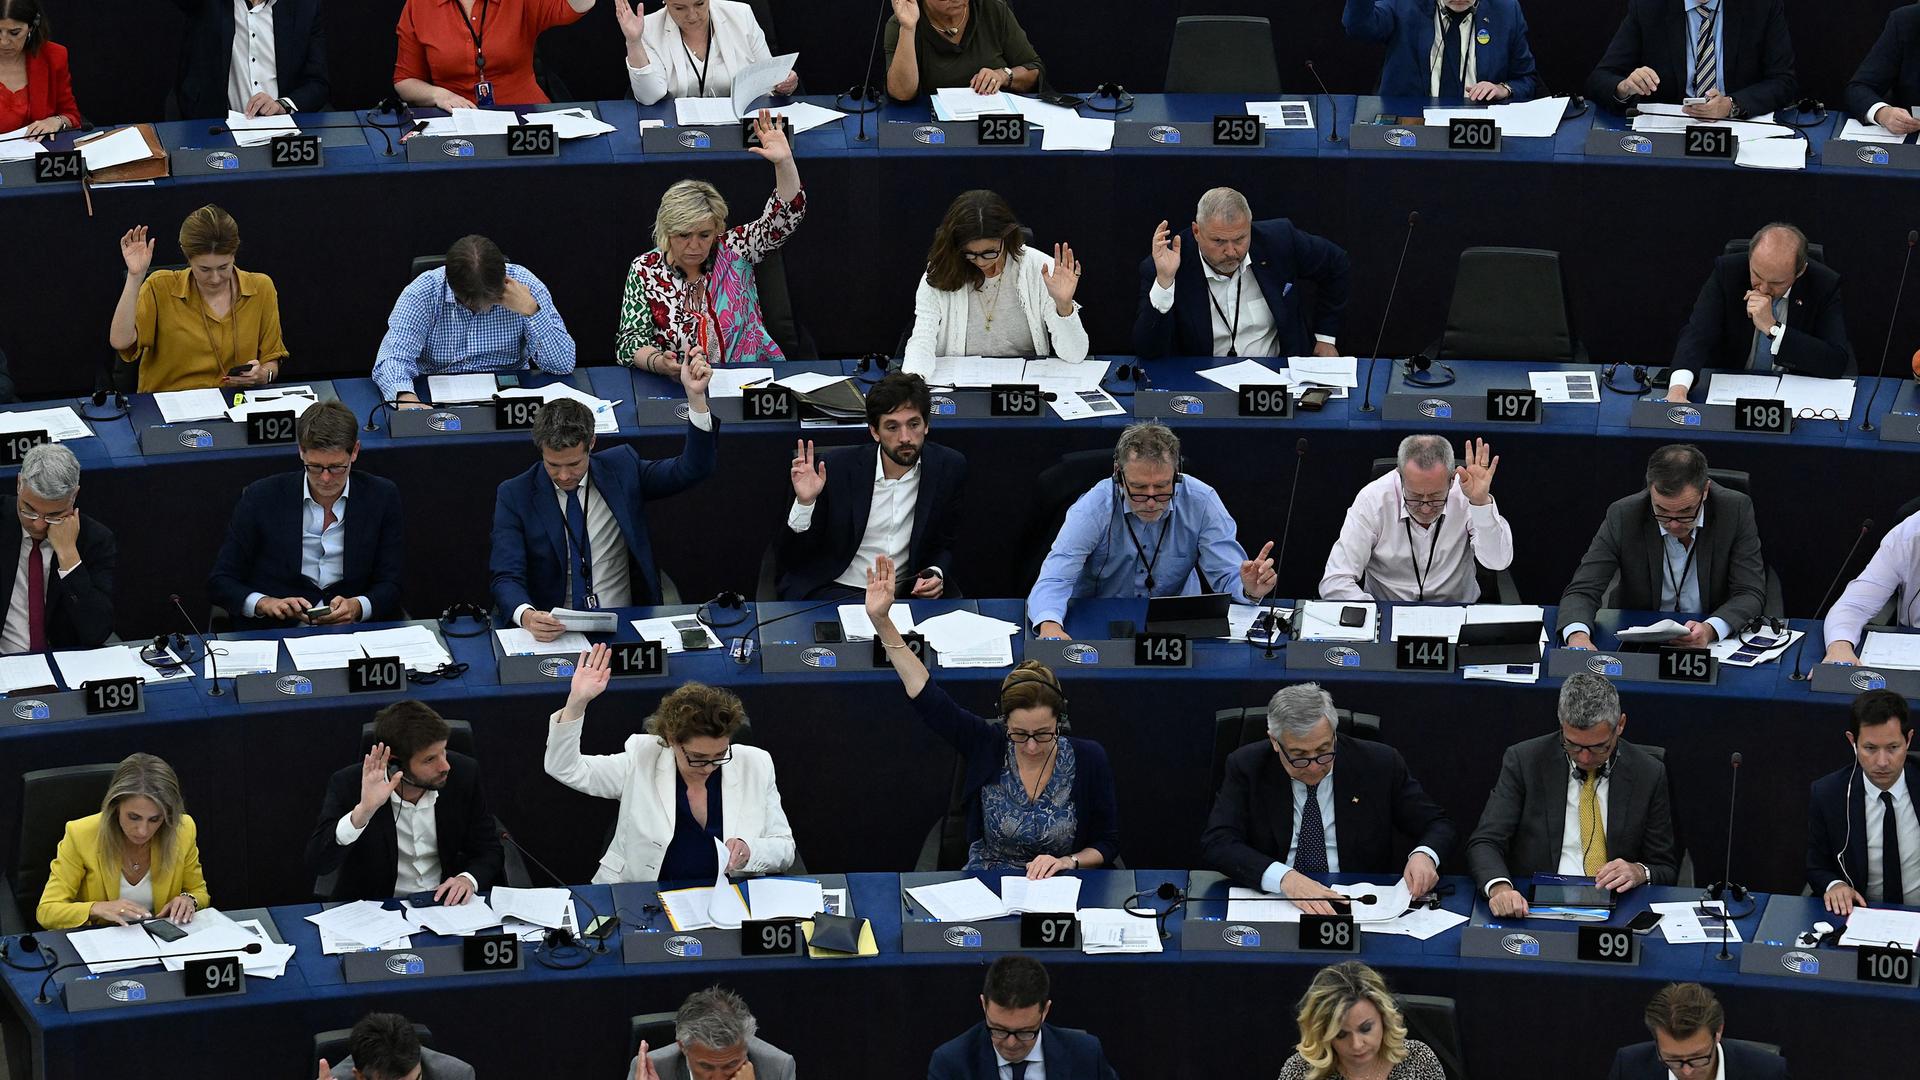 Viele der Mitglieder des Europaparlaments heben die Hände zur Abstimmung.